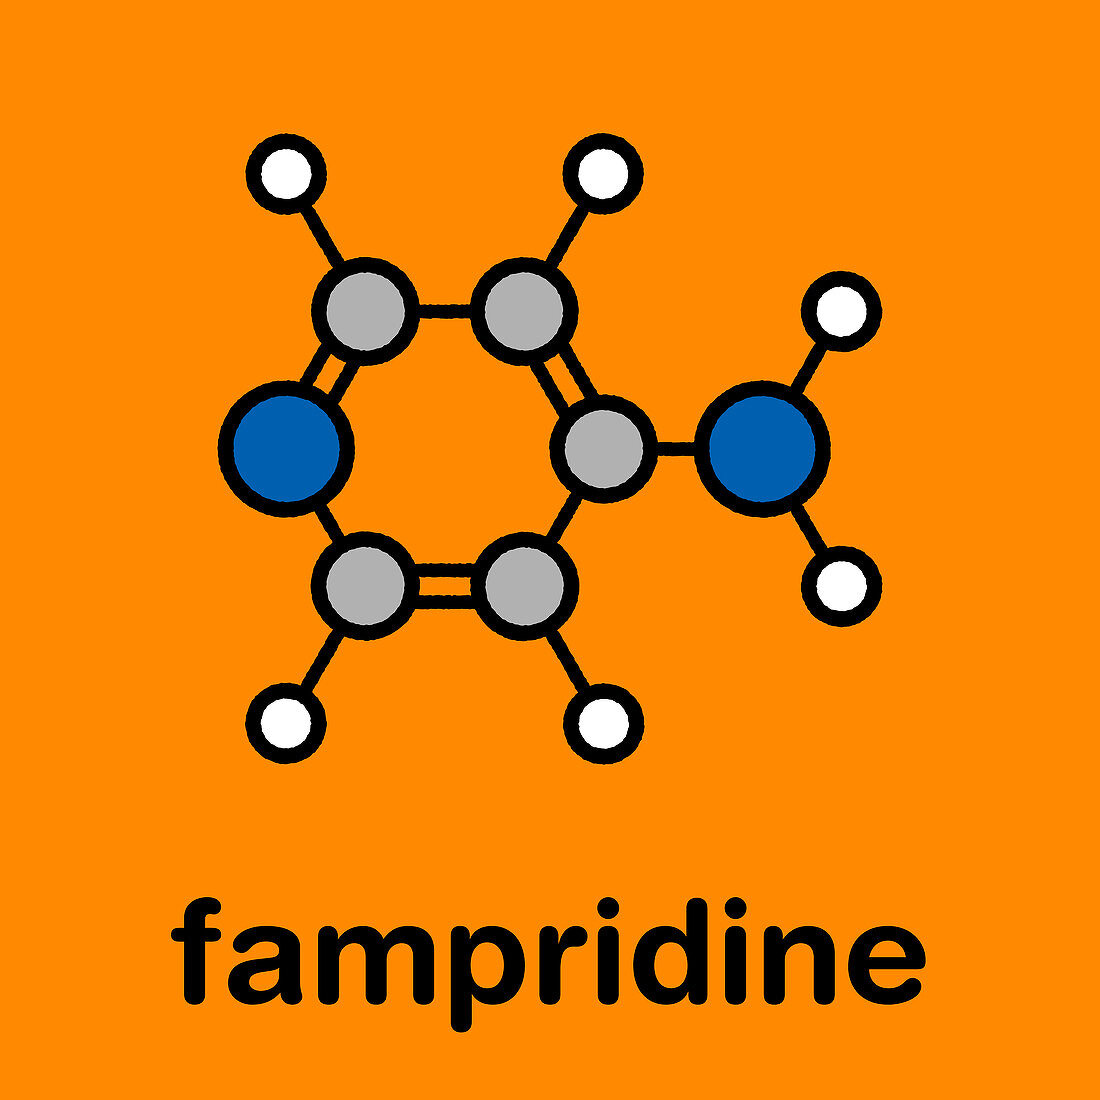 Fampridine multiple sclerosis drug, molecular model